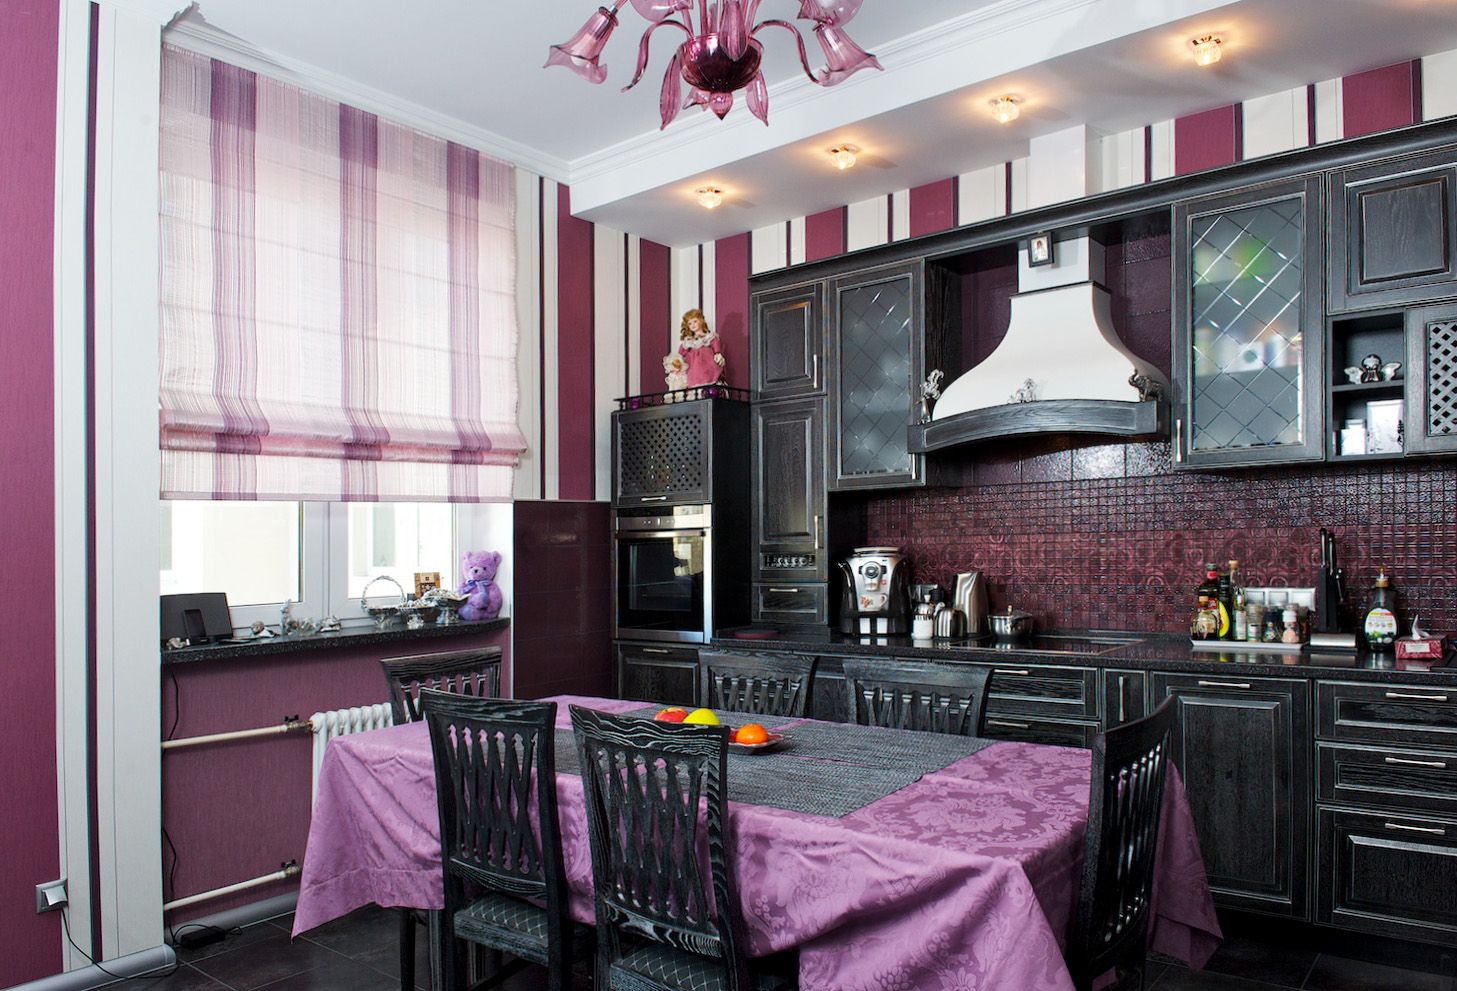 bright kitchen decor in purple